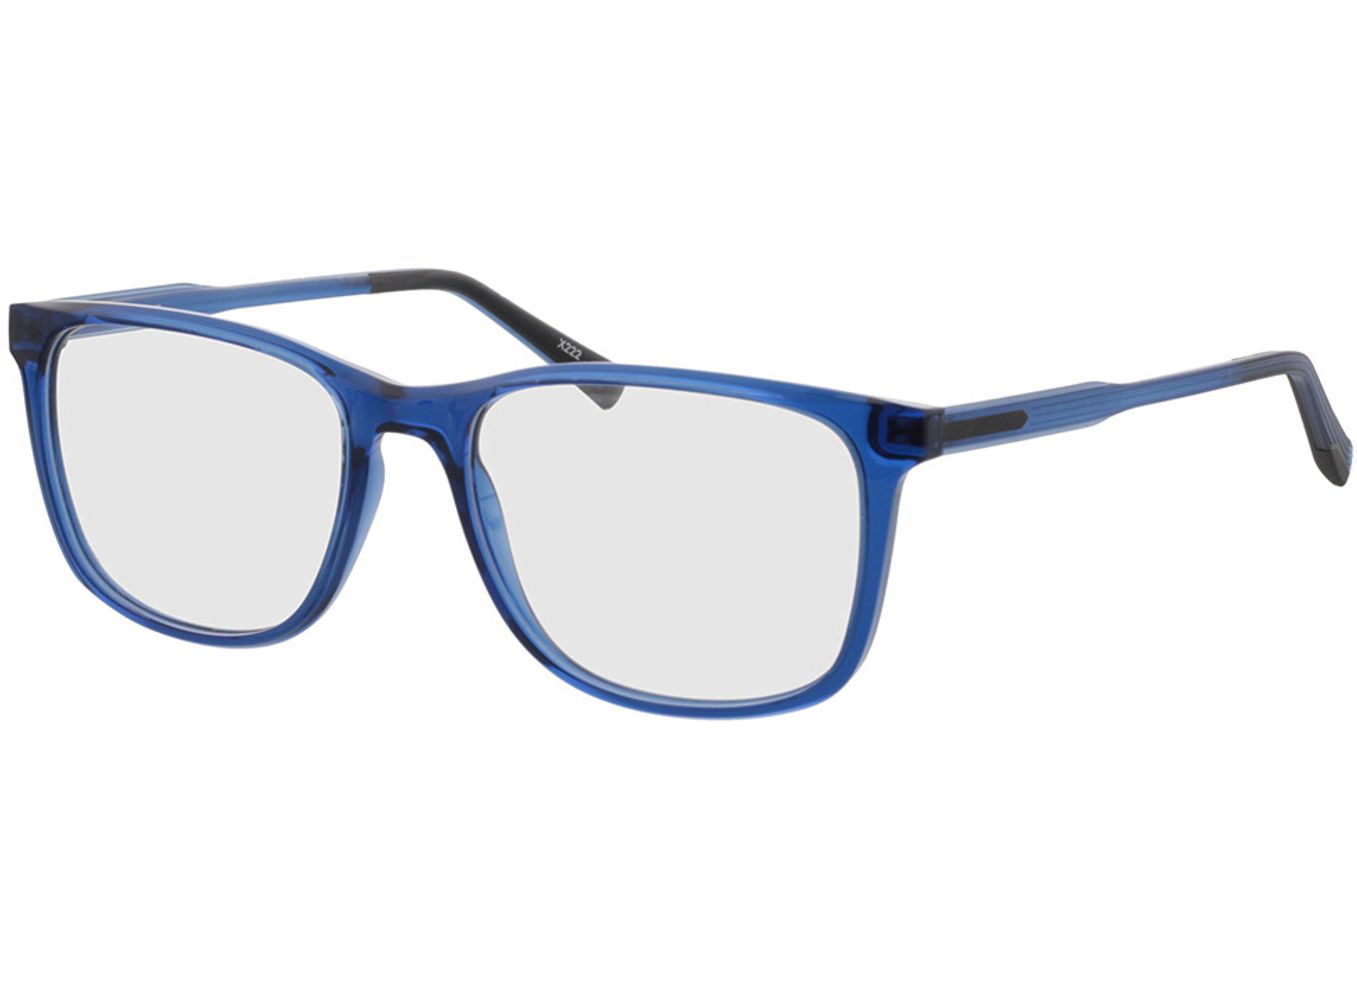 Graham - blau-transparent/matt blau Blaulichtfilter-Brille, Vollrand, Eckig von Brille24 Collection